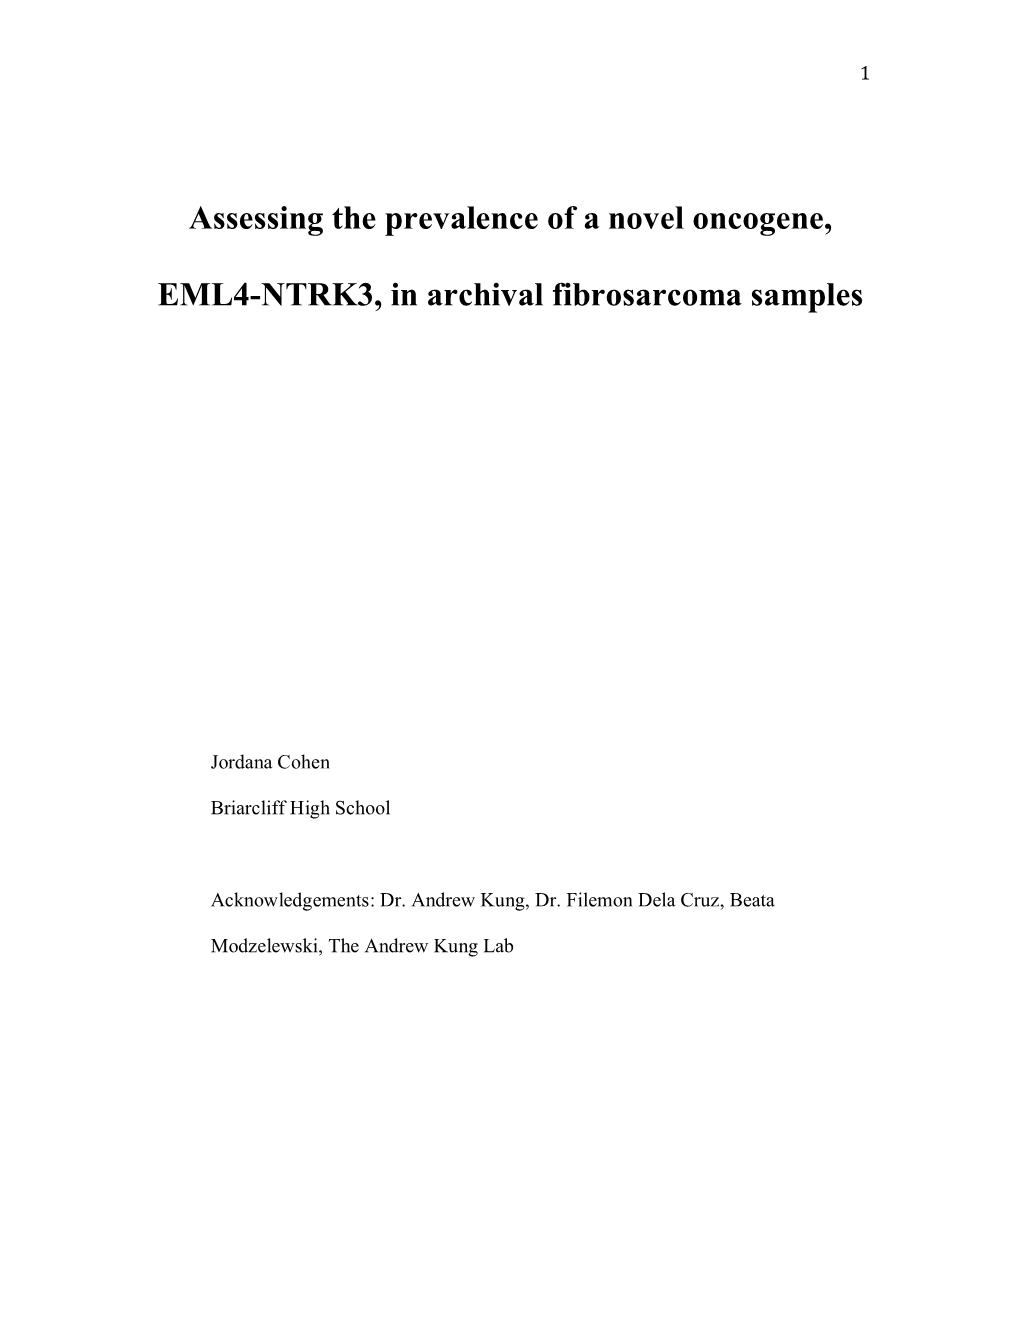 Assessing the Prevalence of a Novel Oncogene, EML4-NTRK3, In